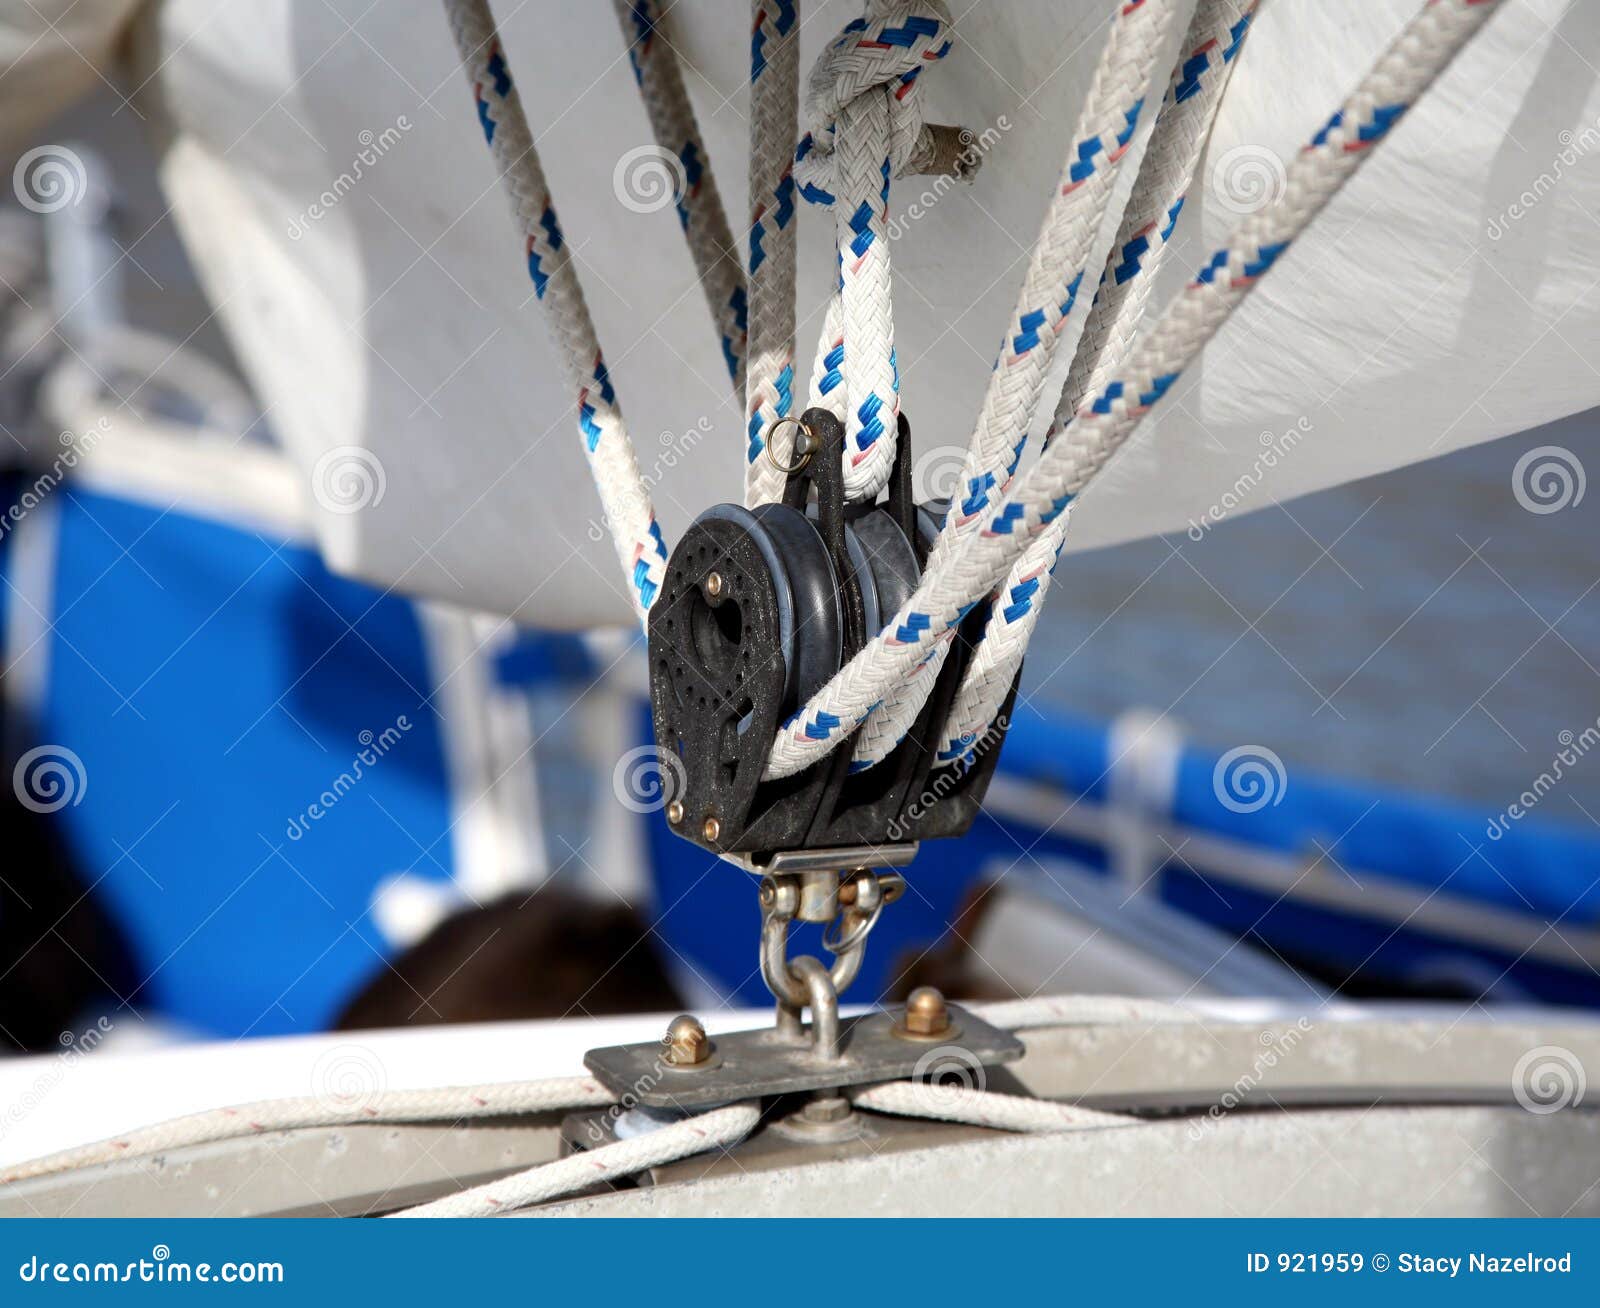 sailing pulley